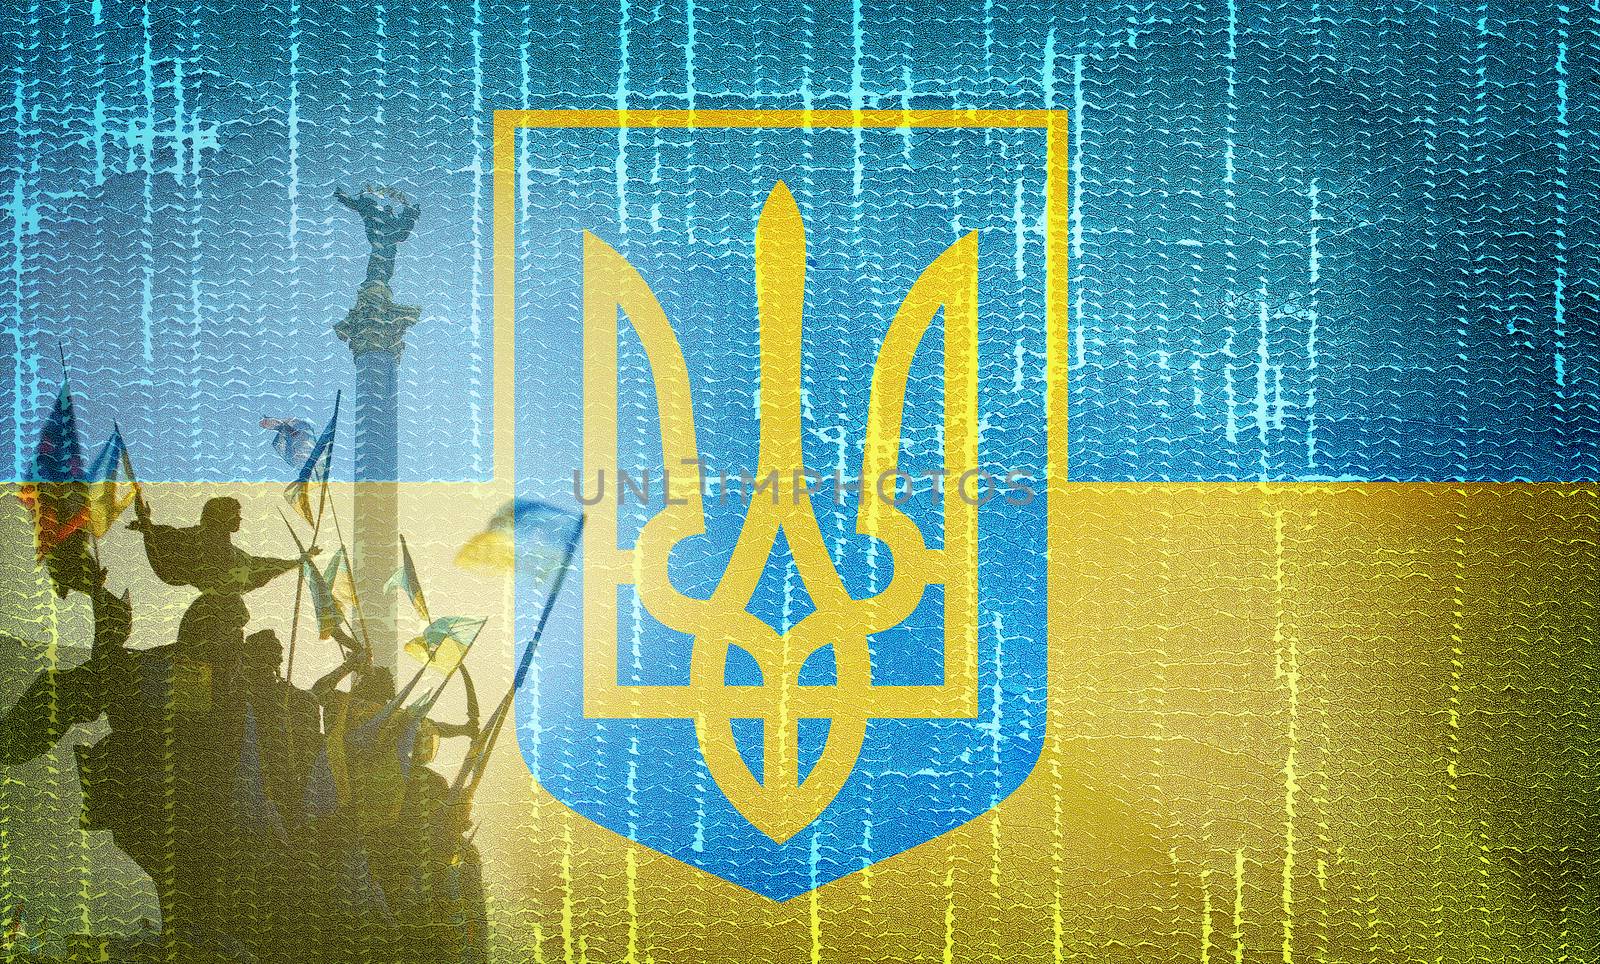 Ukraine Independence Monument on grunge Ukrainian flag background